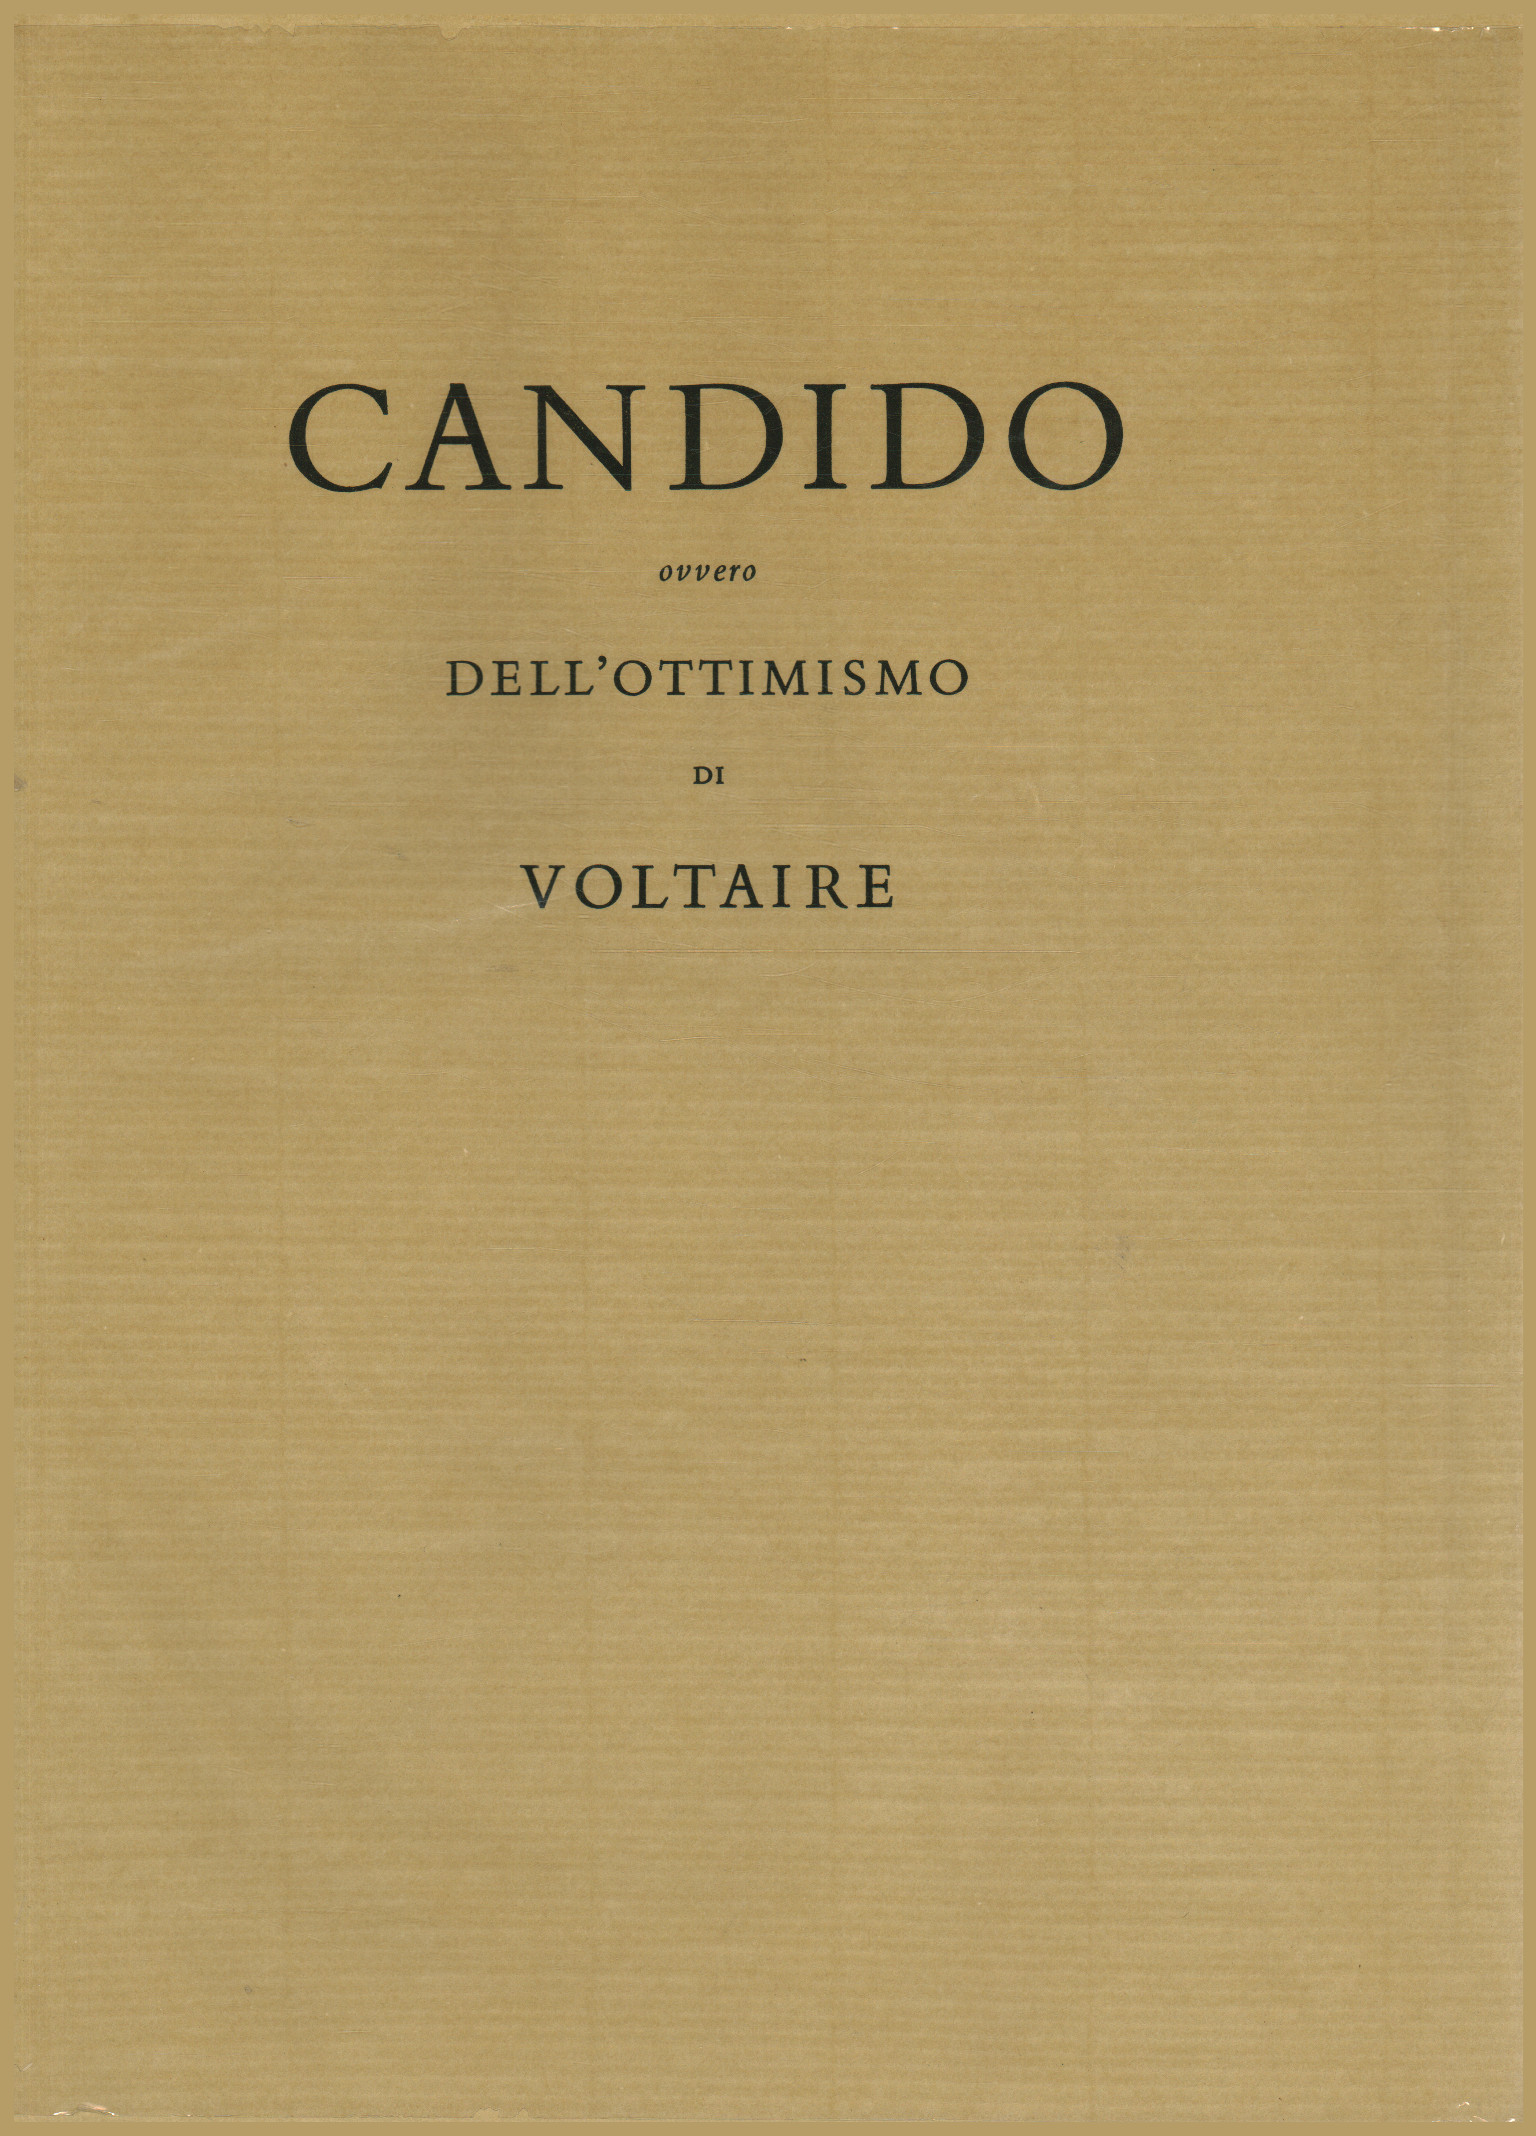 Candide oder von Voltaires Optimismus, AA.VV